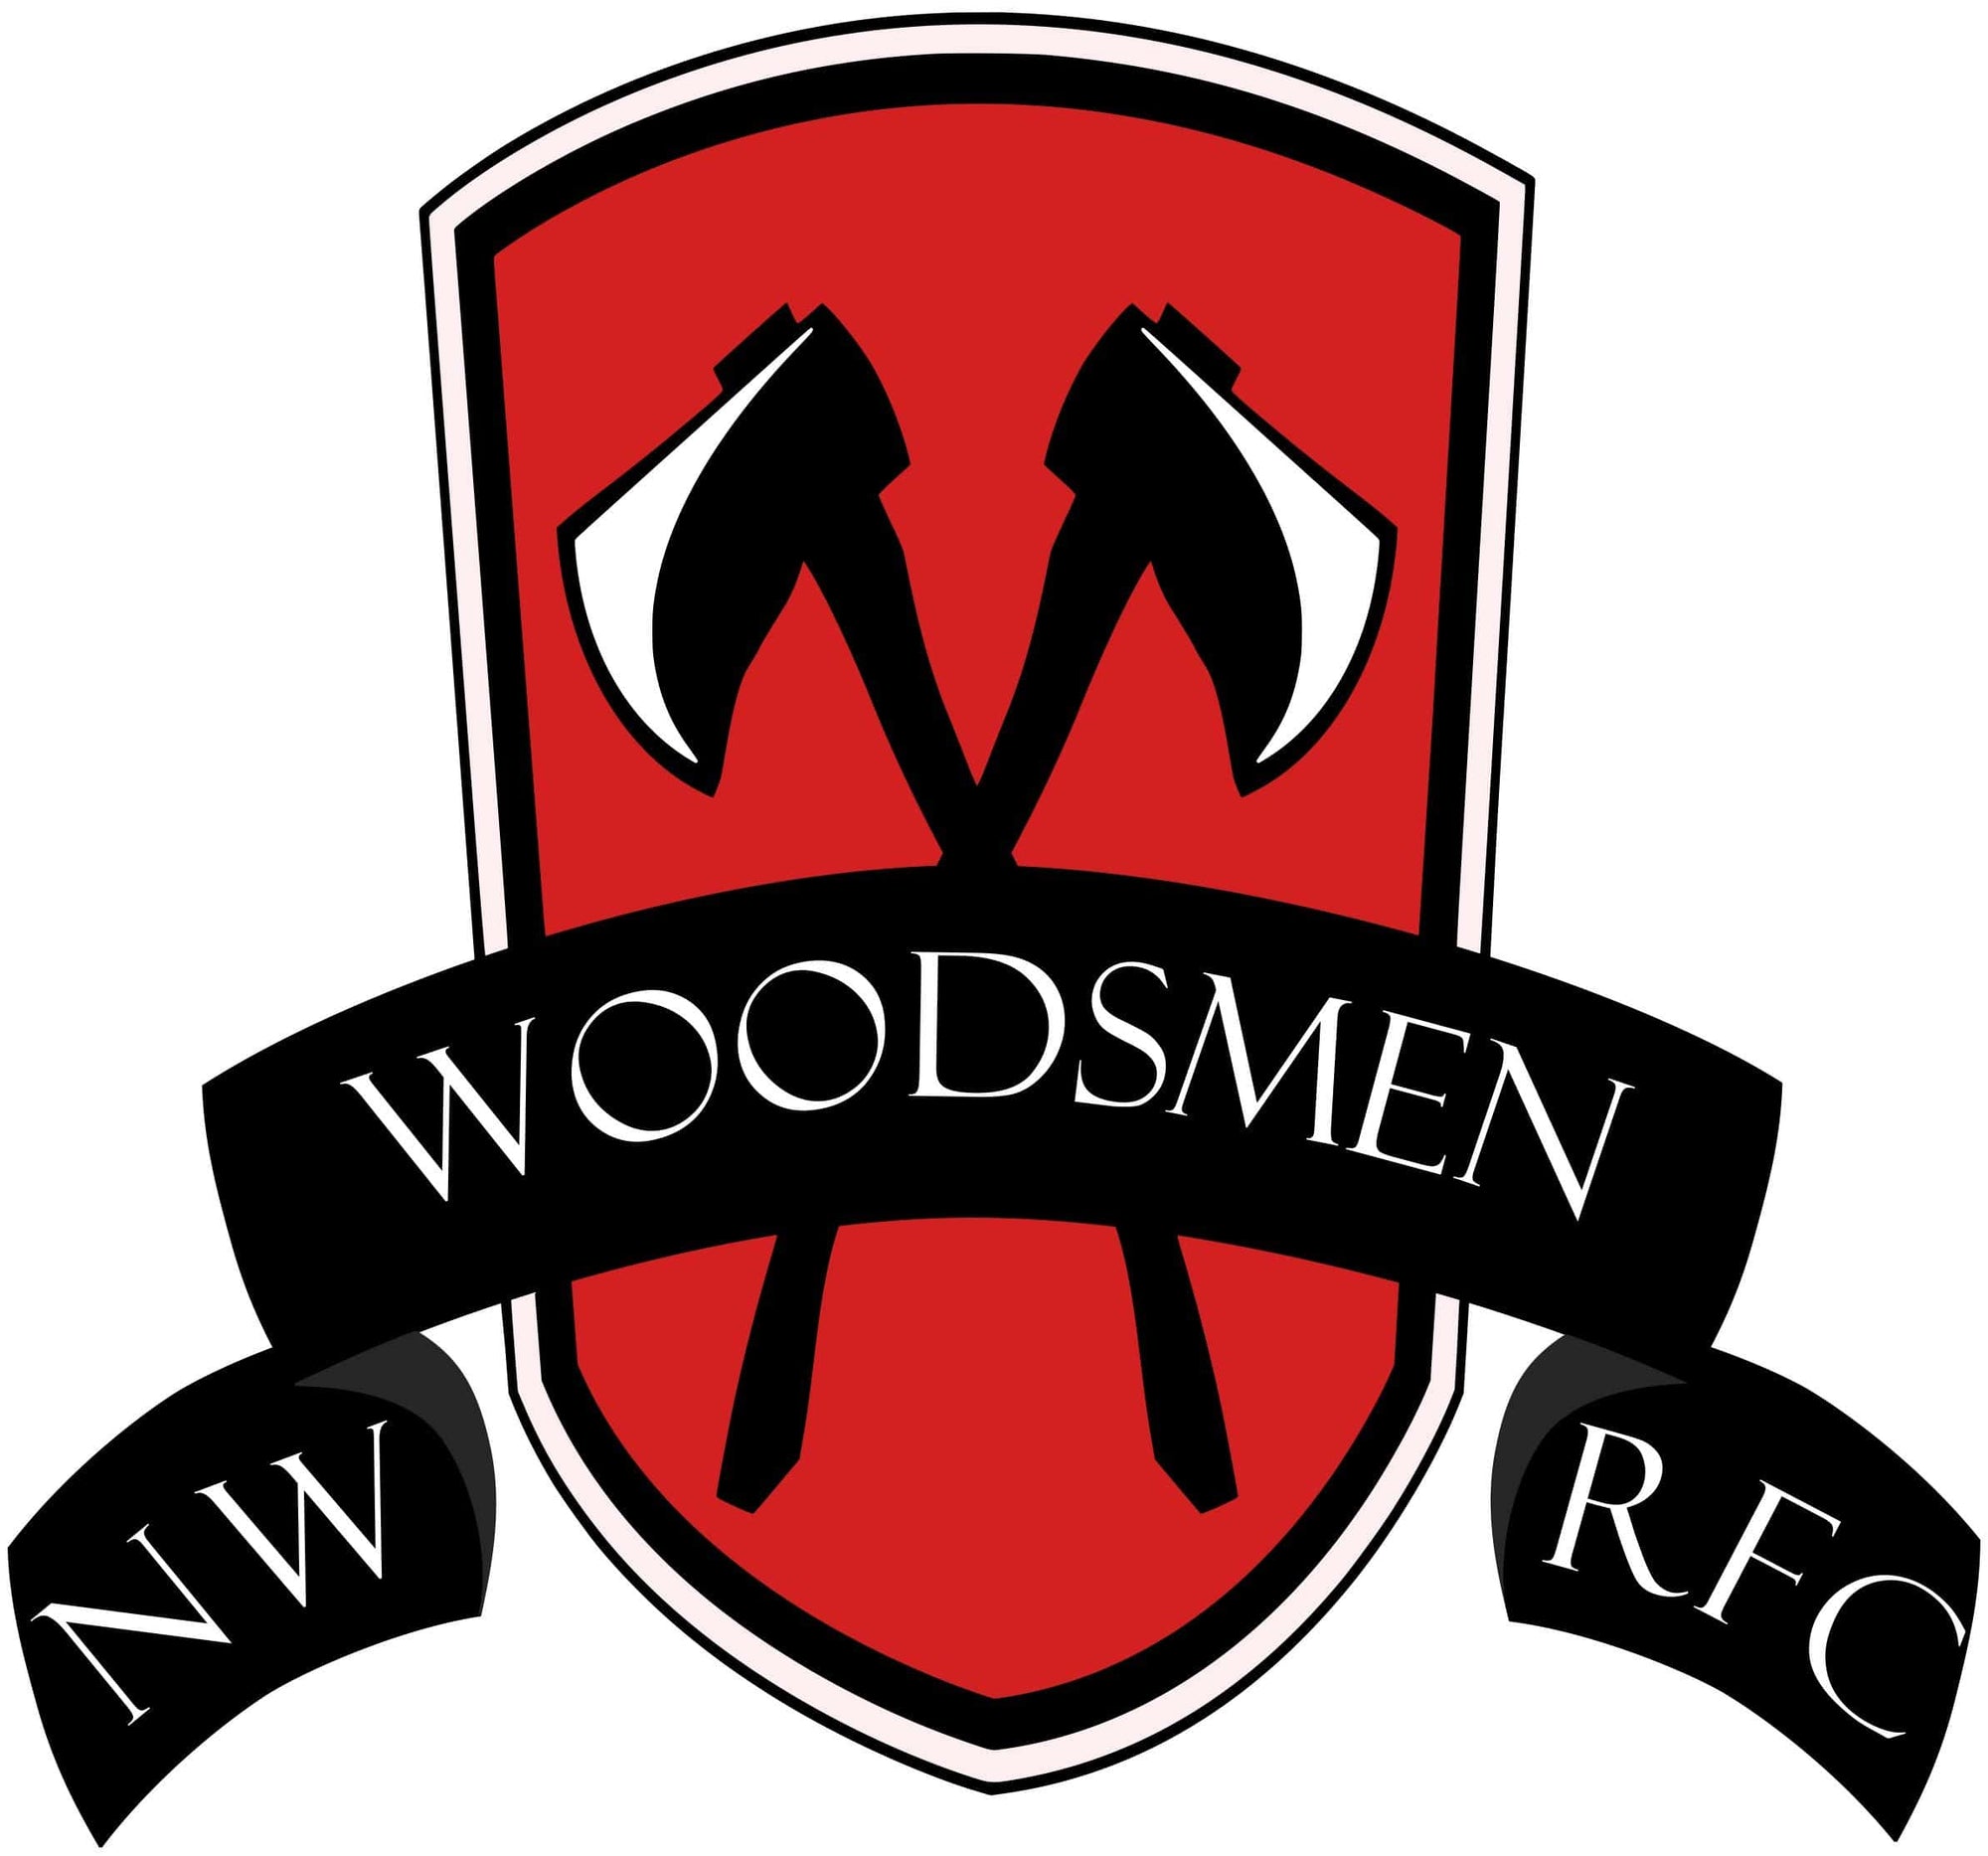 Northwest Woodsmen